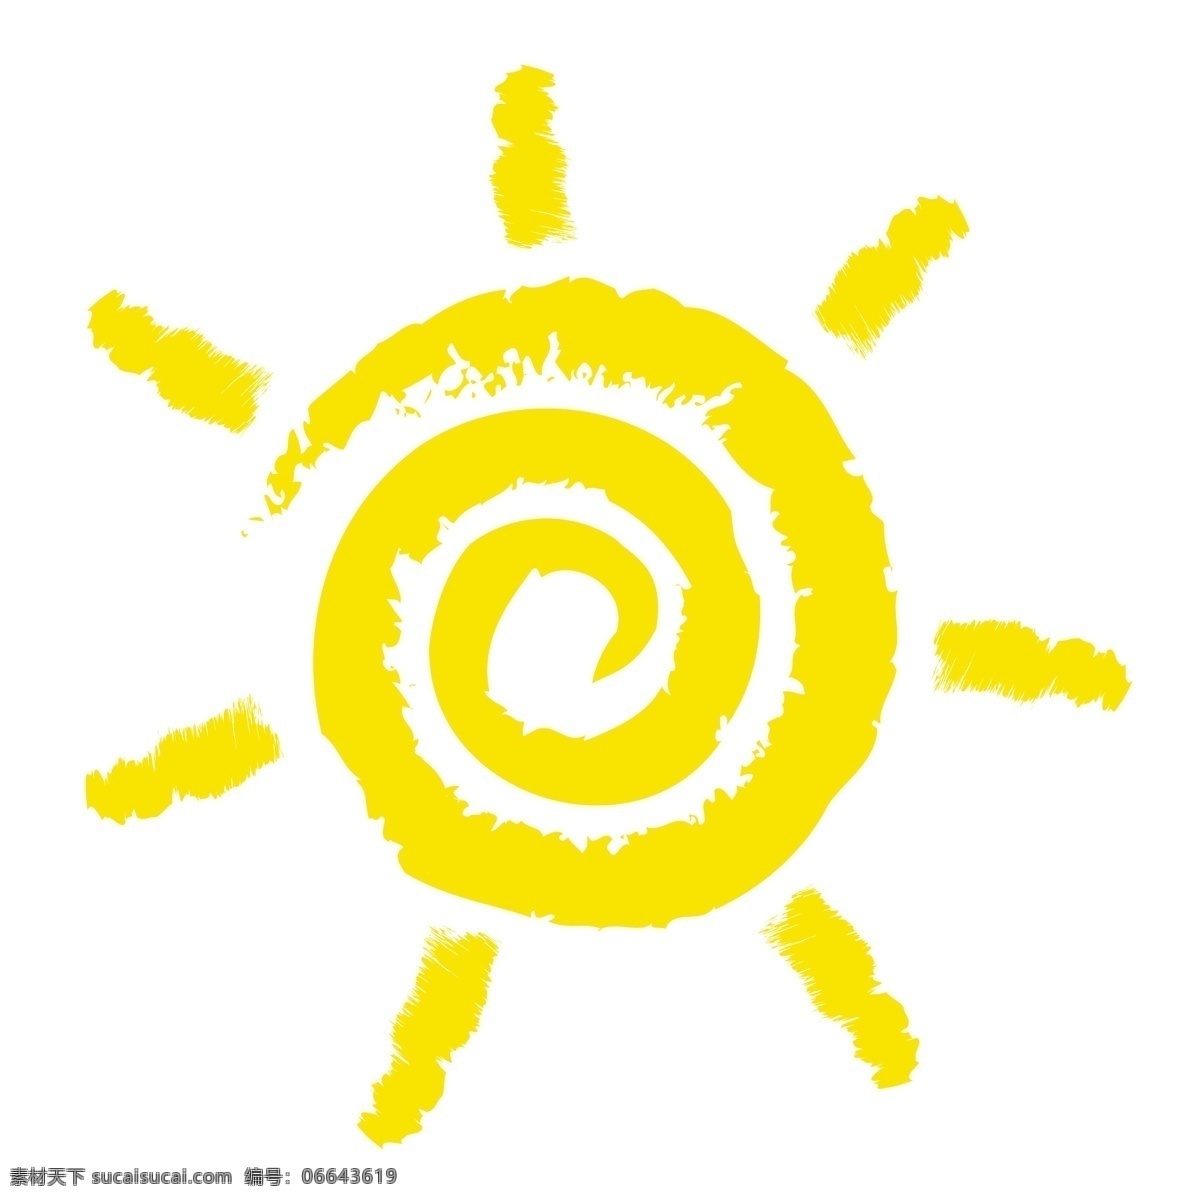 卡通太阳 太阳 卡通素材 金色 阳光矢量 夏日 夏天素材 卡通设计